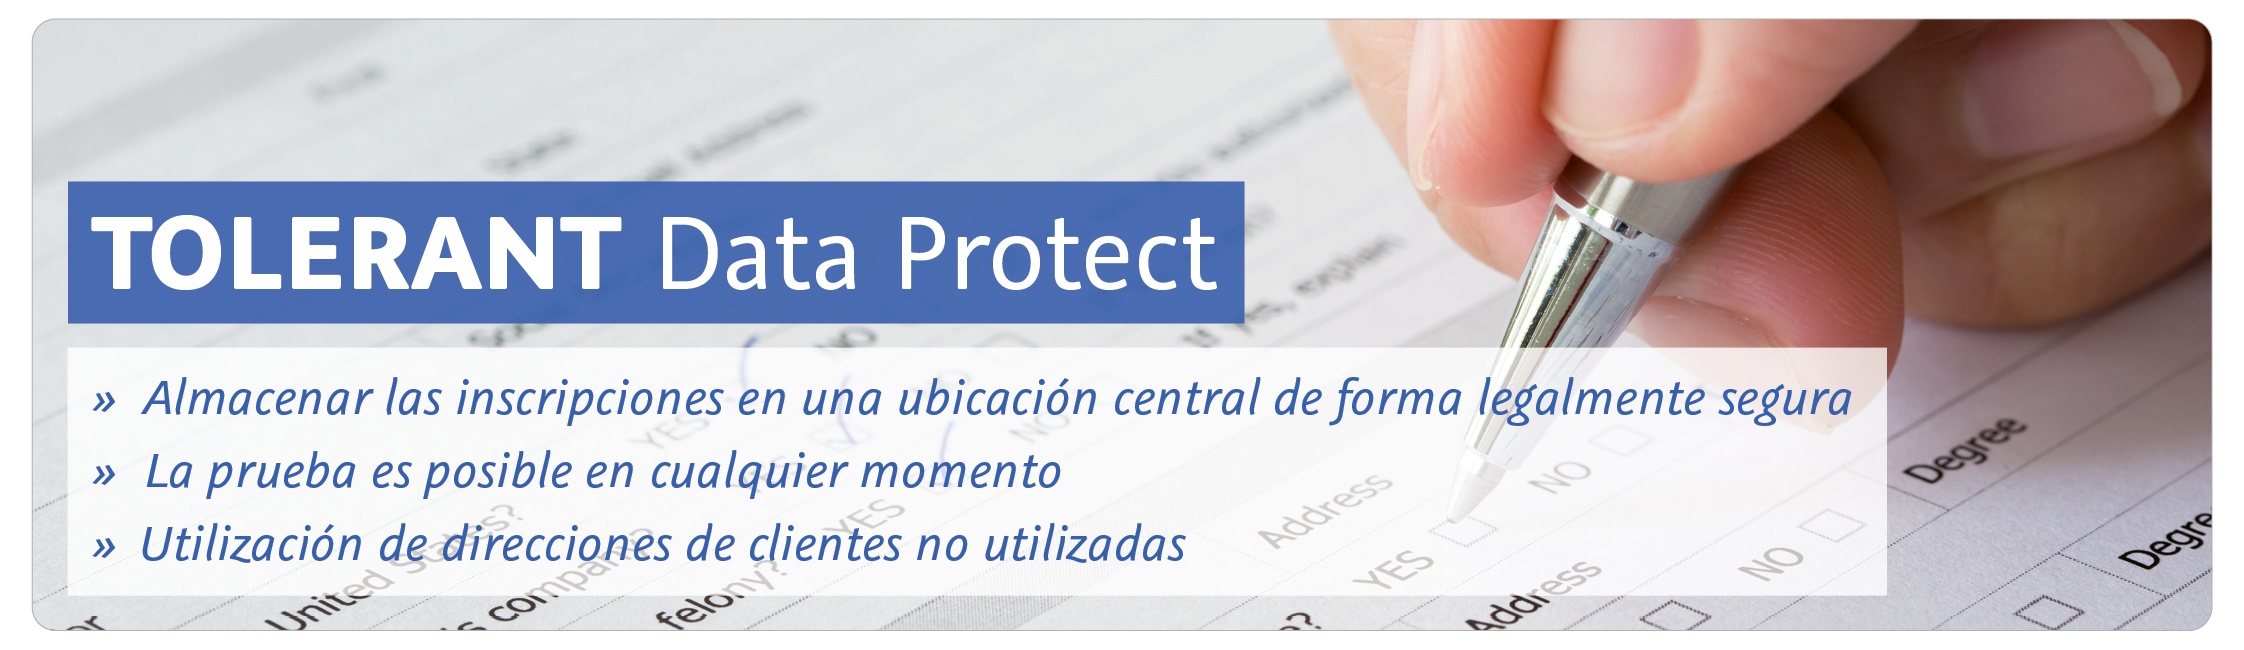 TOLERANT Data Protect: Almacenar las inscripciones en una ubicación central de forma legalmente segura; la prueba es posible en cualquier momento; Utilización de direcciones de clientes no utilizadas